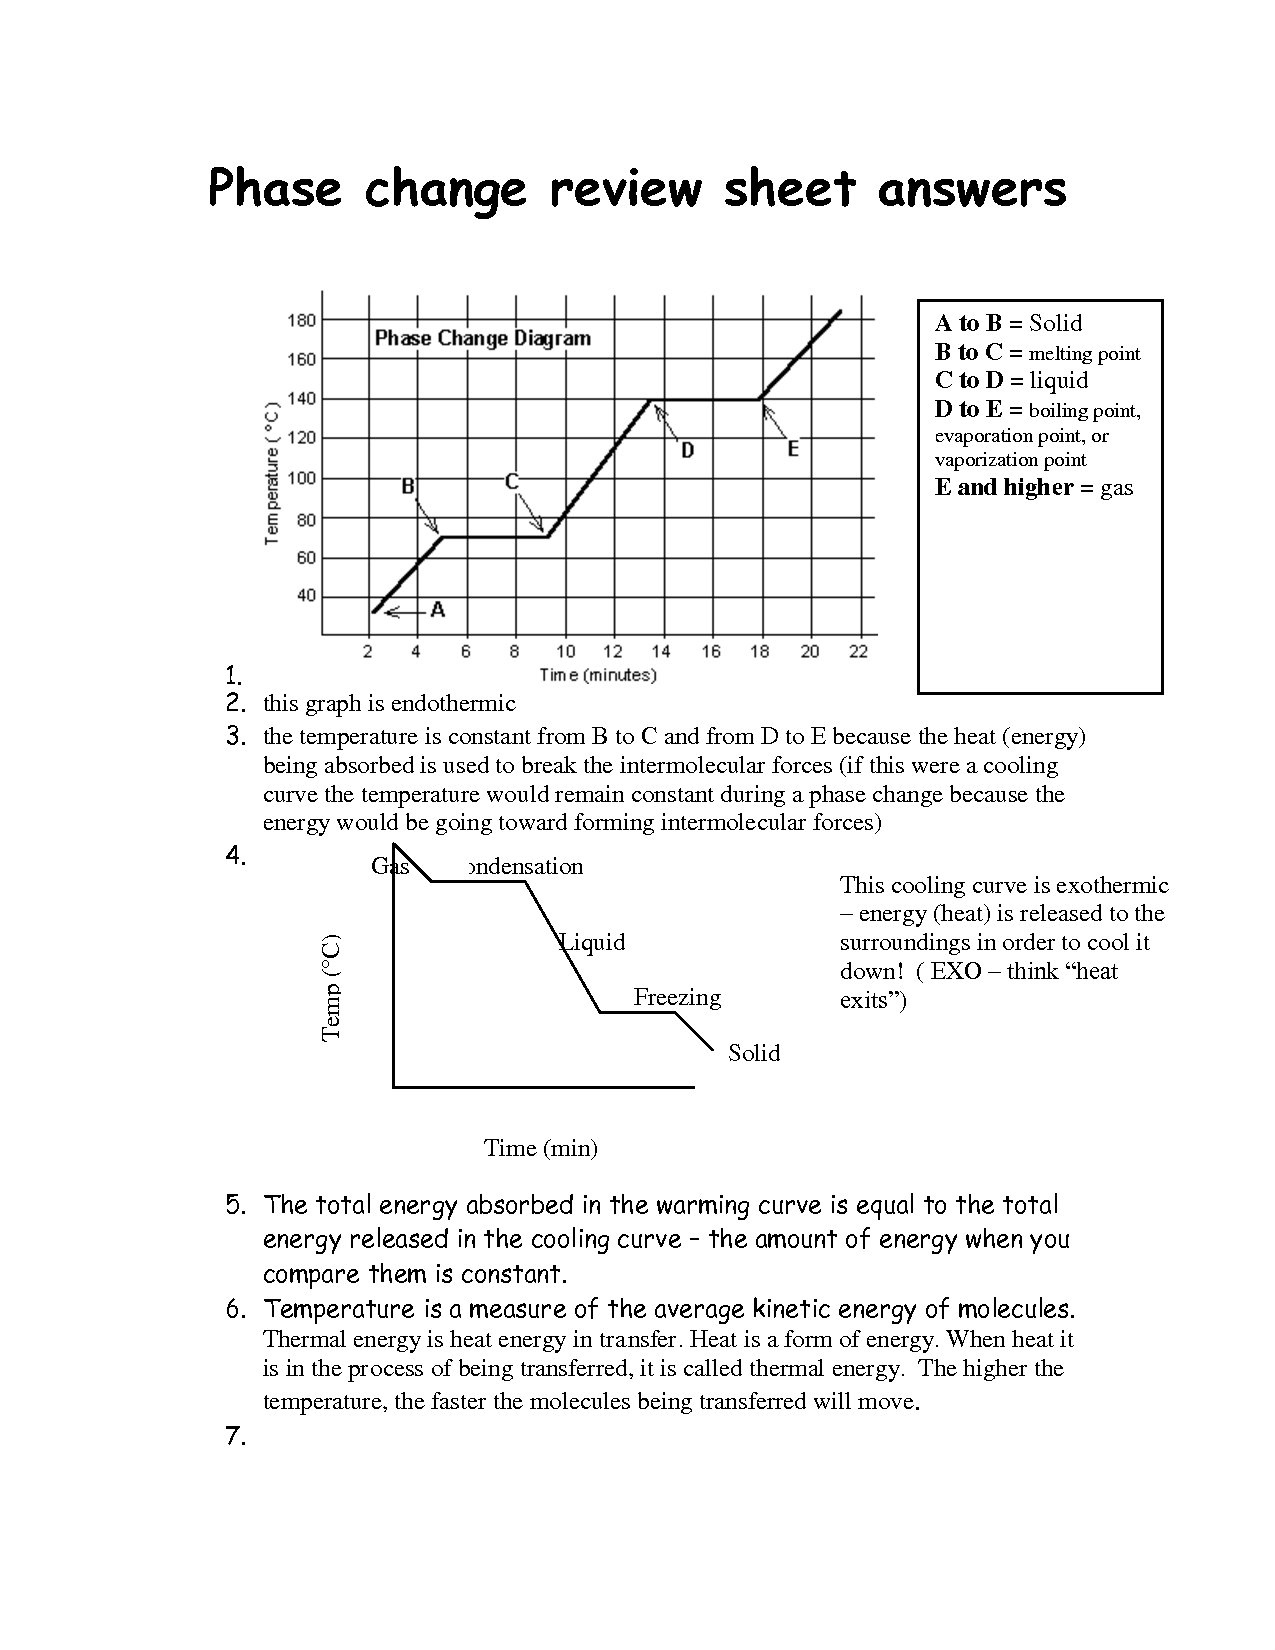 Phase Change Worksheet Answer Sheet Image